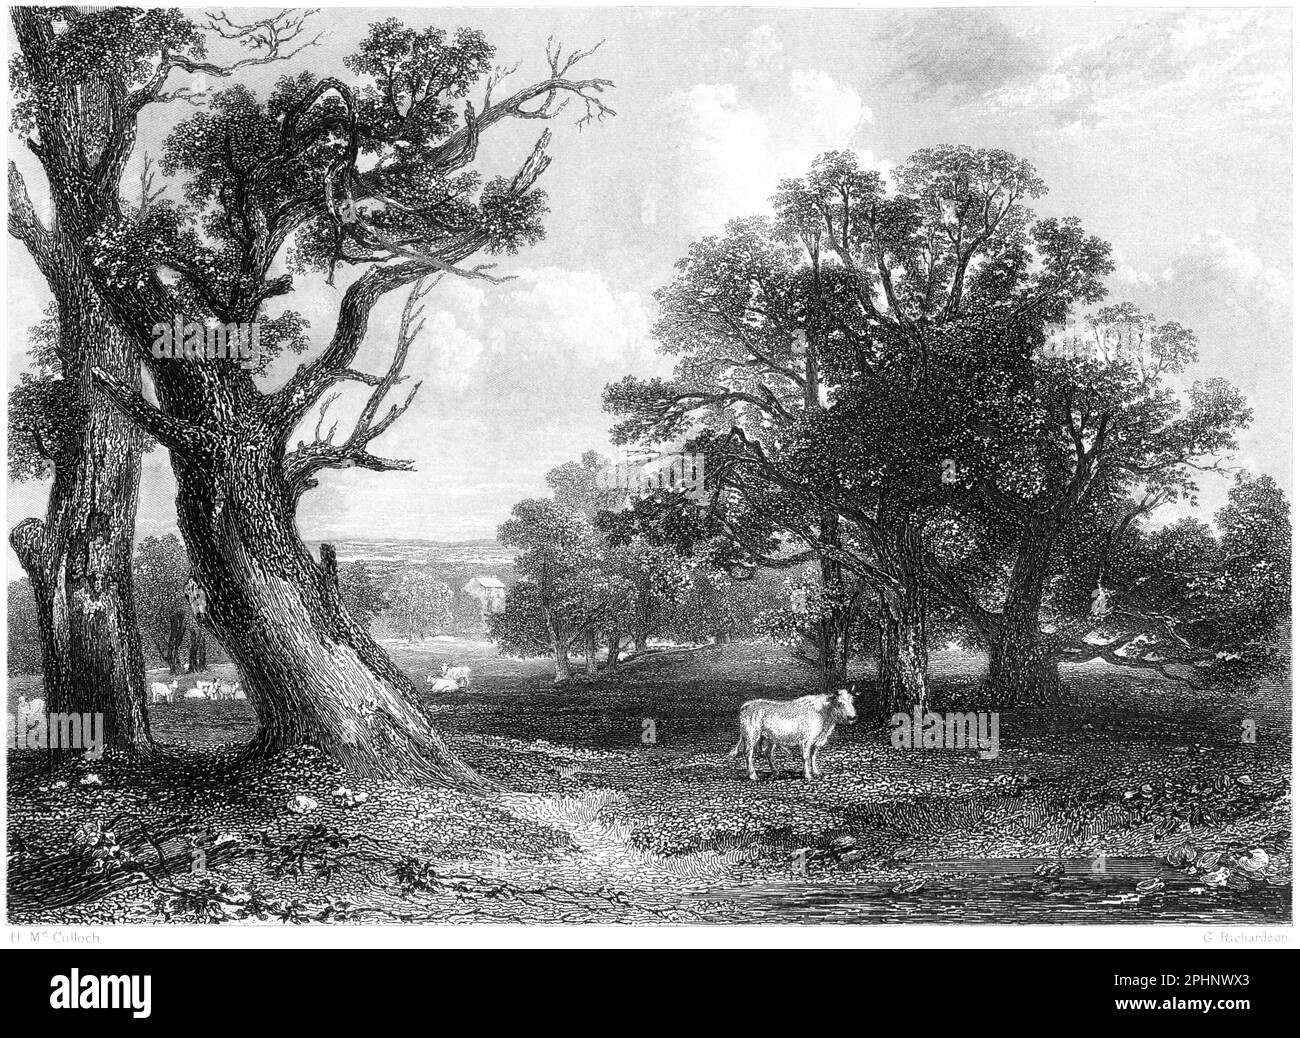 Gravur einer Szene in Cadyow (Cadzow) Park, Lanarkshire, Schottland, Großbritannien, gescannt in hoher Auflösung von einem 1840 gedruckten Buch. Glaubte, dass es keine Urheberrechte gibt Stockfoto